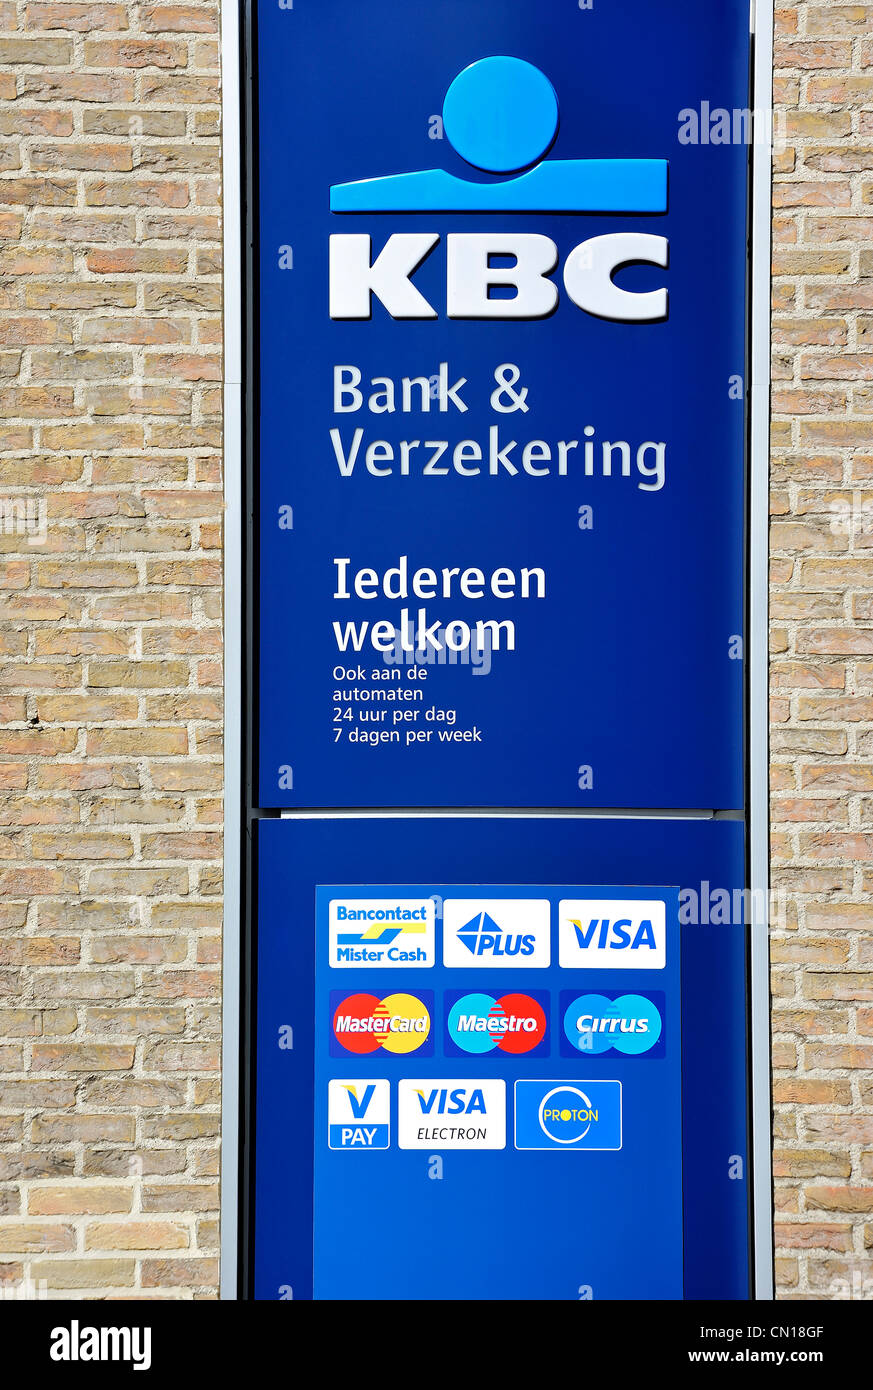 Pancarte montrant les logos de marques de cartes de crédit sur le guichet automatique bancaire / distributeur de la banque KBC, Flandre orientale, Belgique Banque D'Images